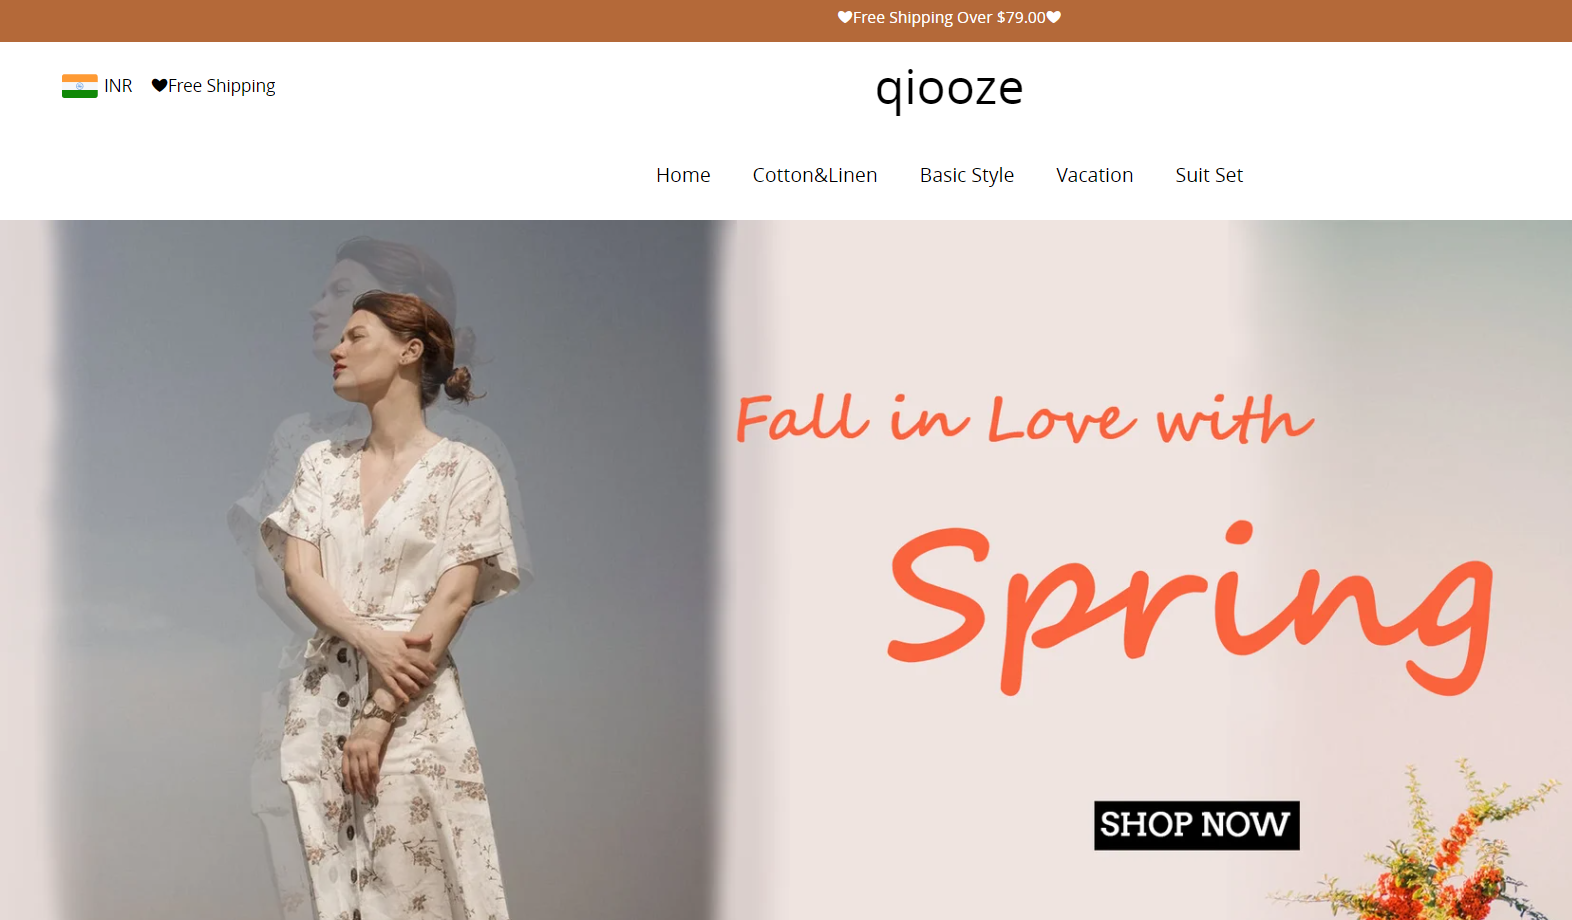 Qiooze.com review legit or scam